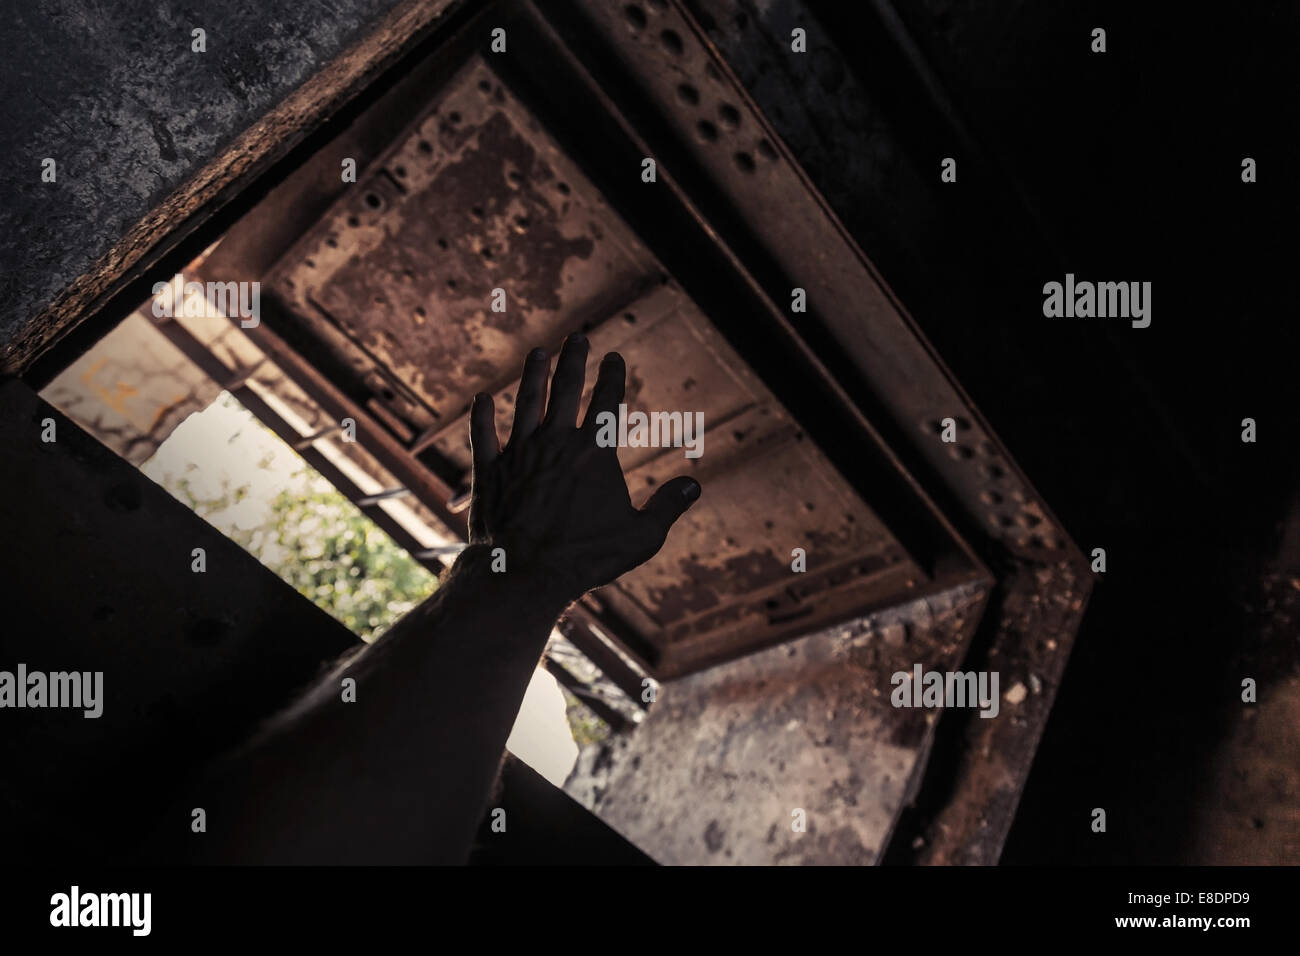 Grunge dunklen Innenraum mit verrosteten Tür öffnen und männliche Hand silhouette Stockfoto